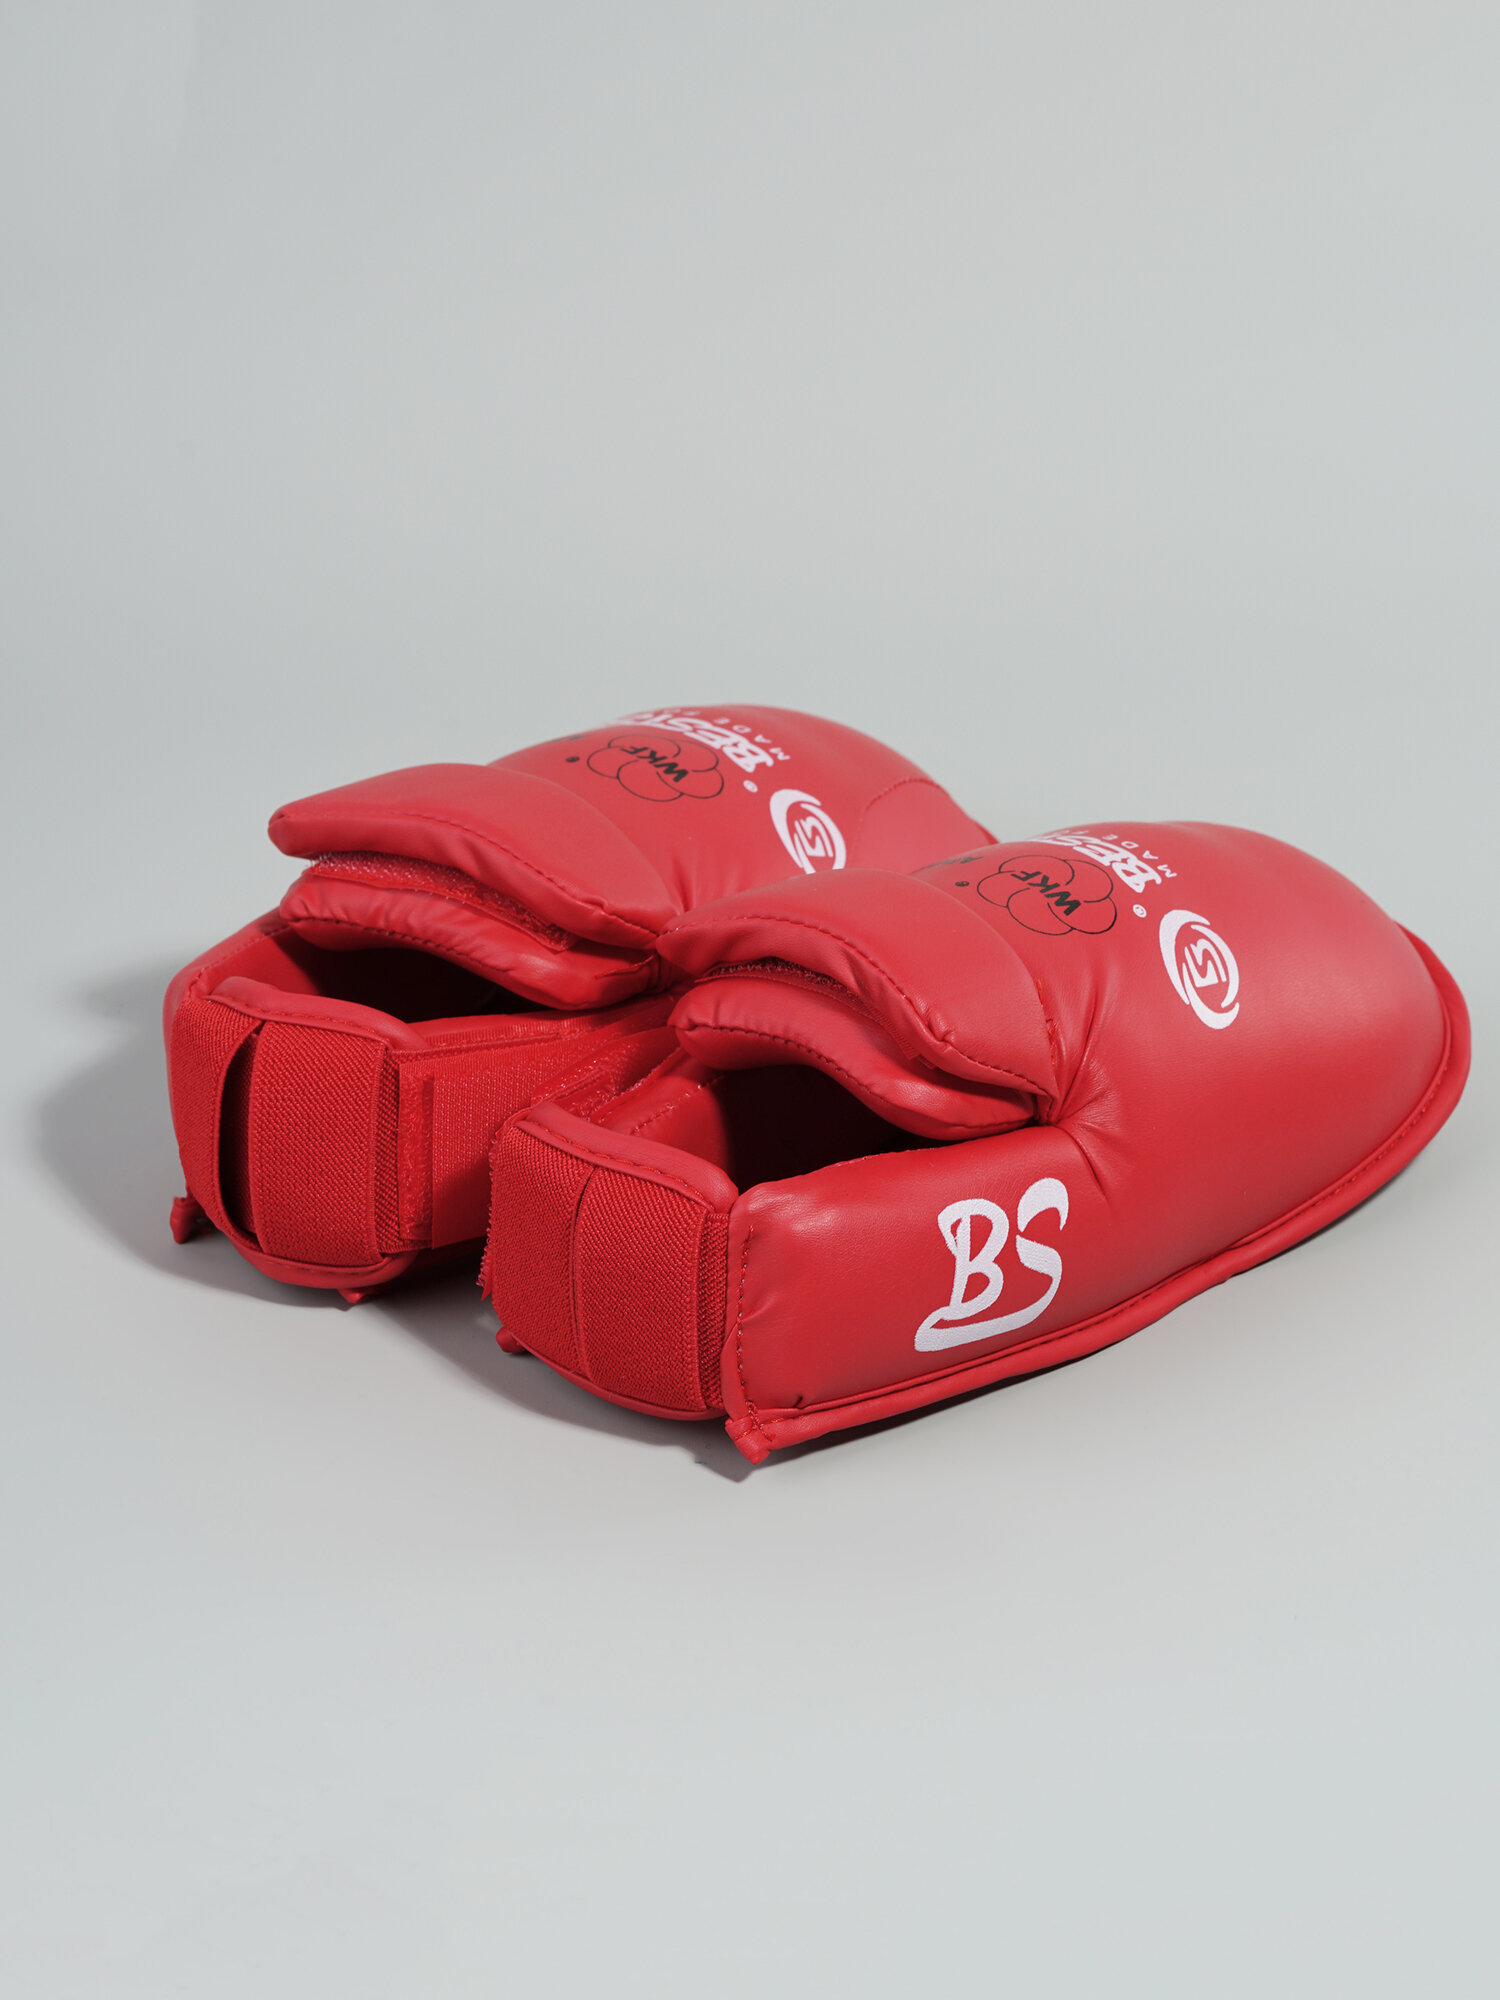 Комплект защиты голени и стопы для каратэ BestSport, красные, L (41-43)